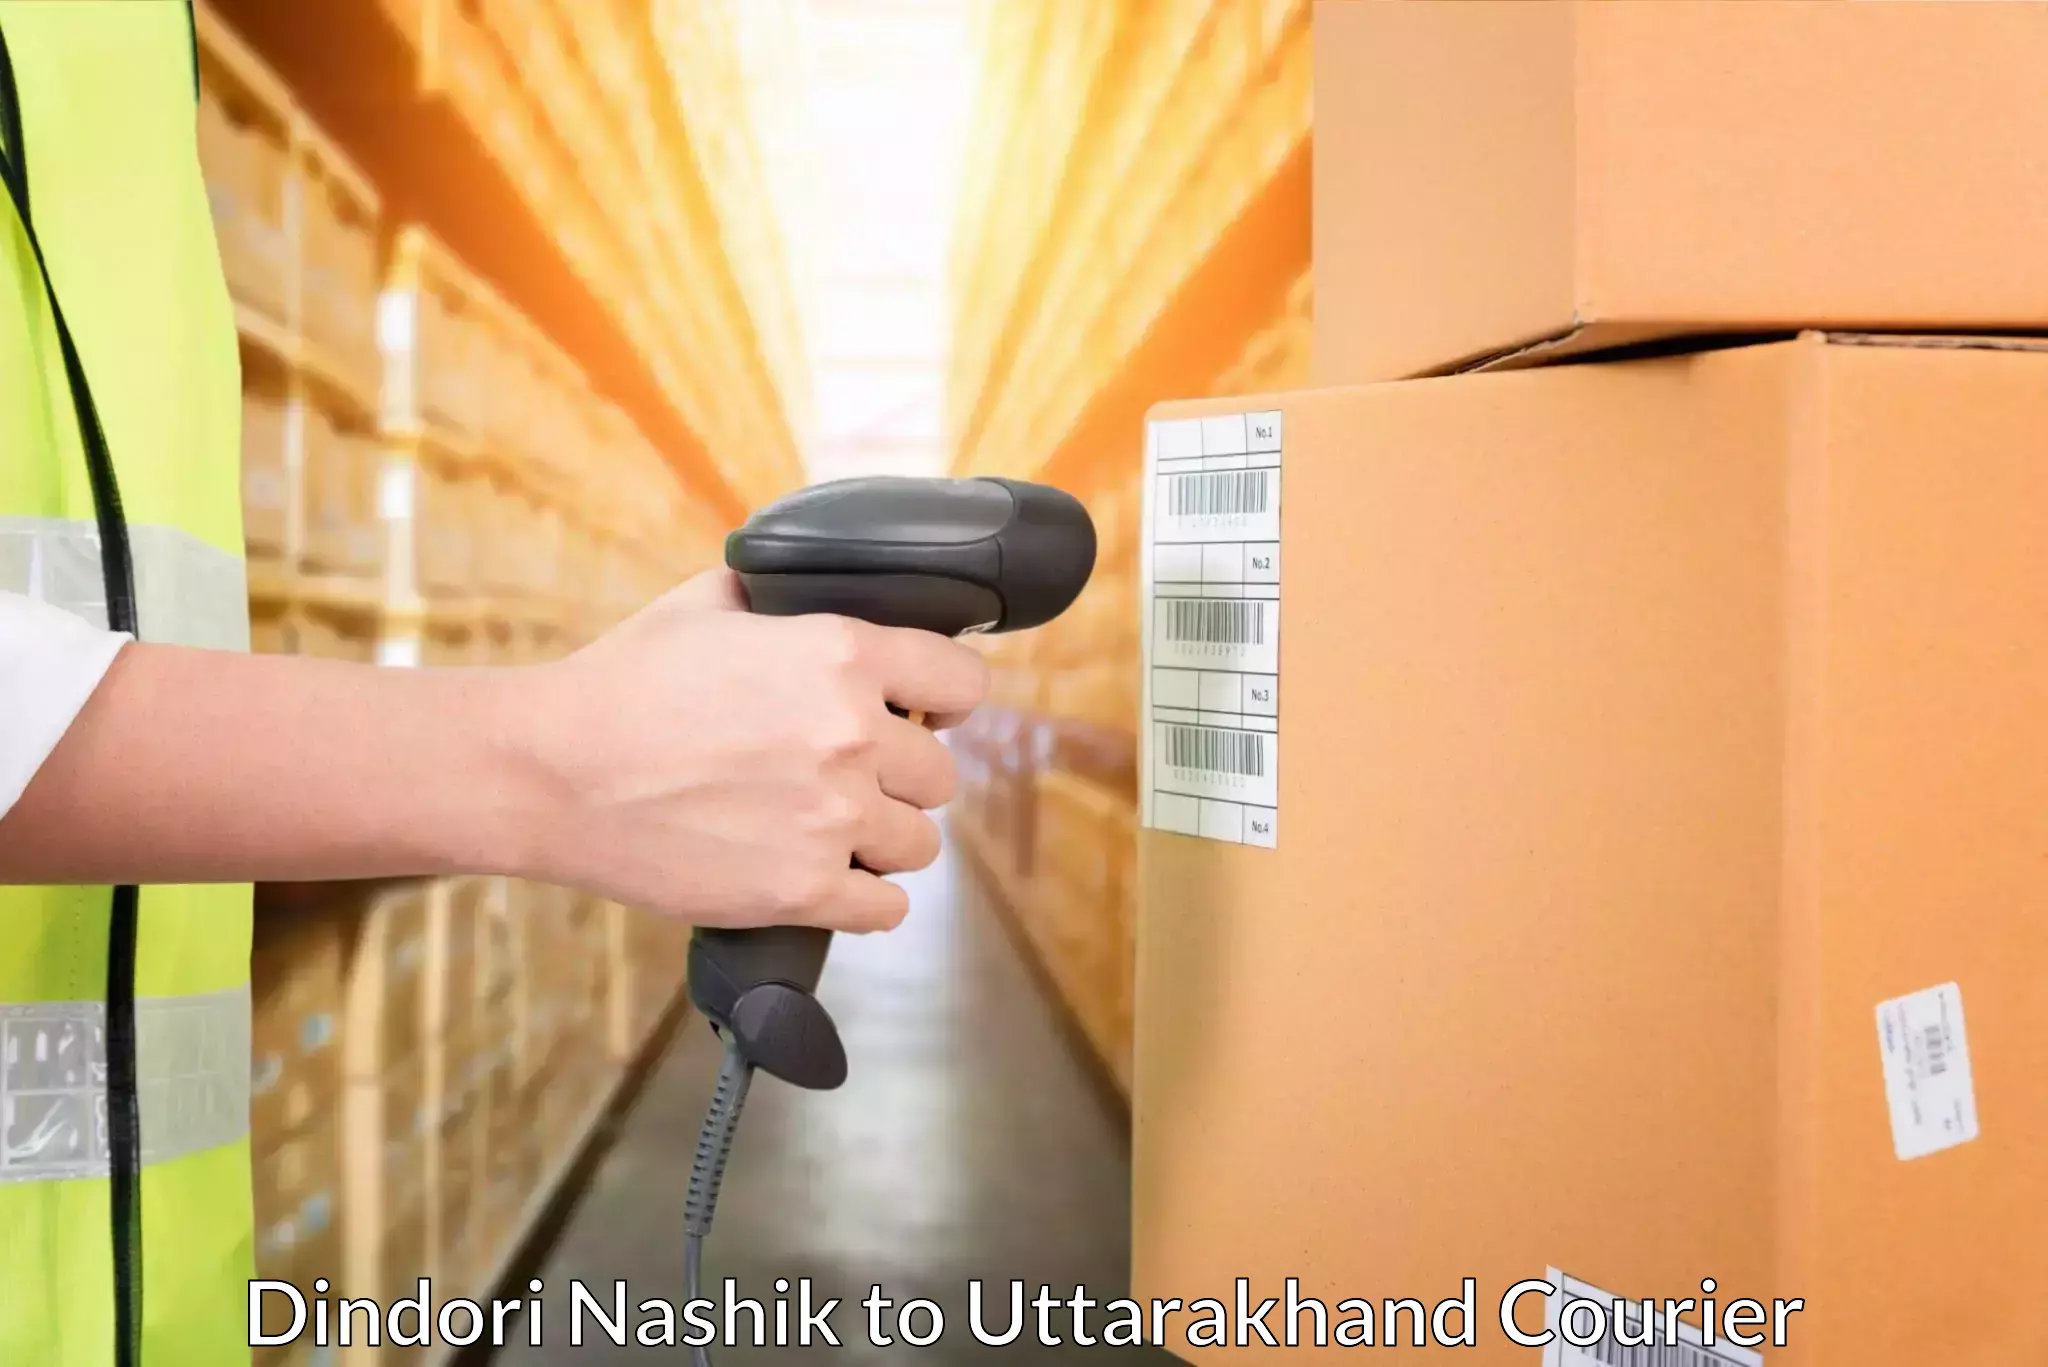 Seamless shipping service Dindori Nashik to Tehri Garhwal